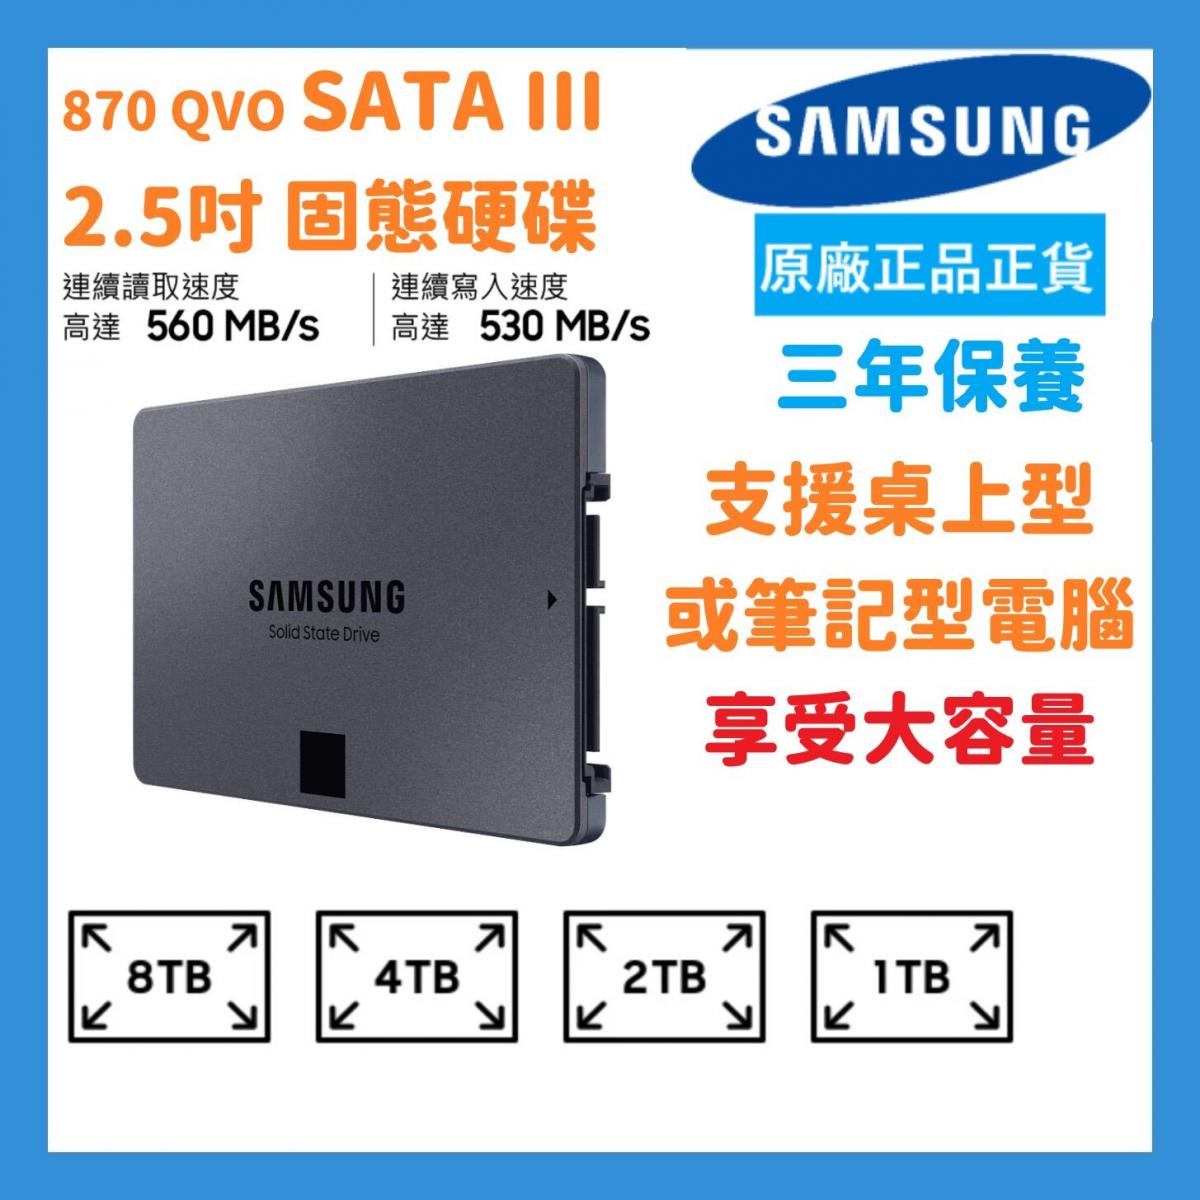 2TB 870 QVO SATA III 2.5吋 SSD 內部固態硬碟 (MZ-77Q2T0BW) -【原裝正貨】